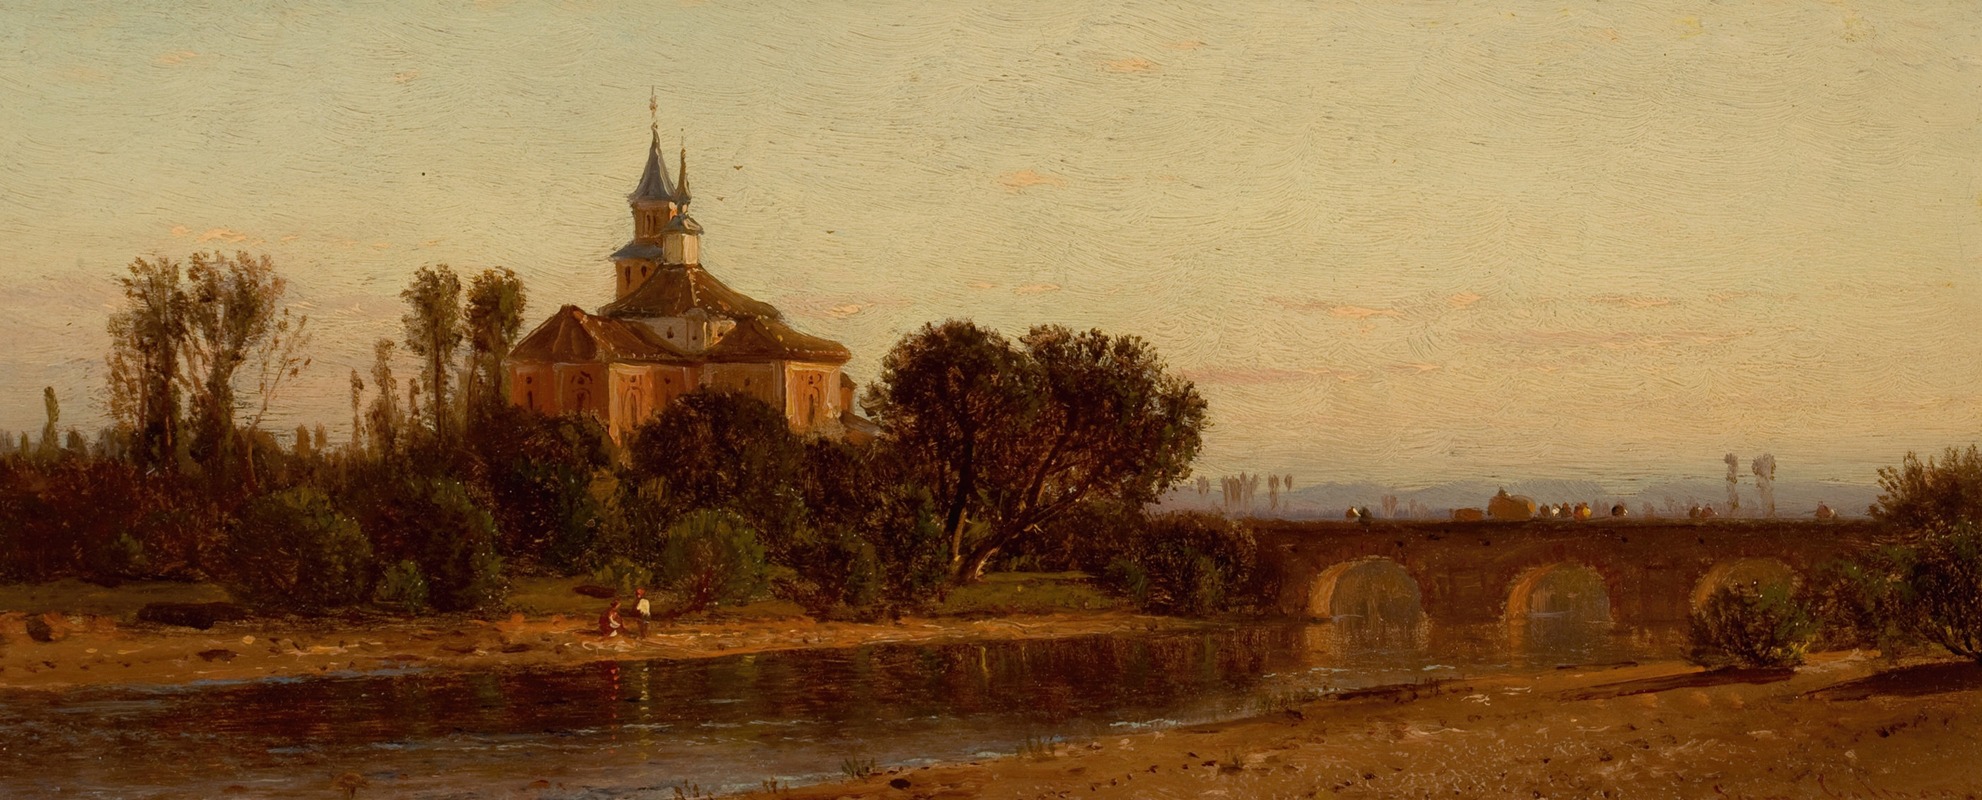 Samuel Colman - European River View with Bridge and Church